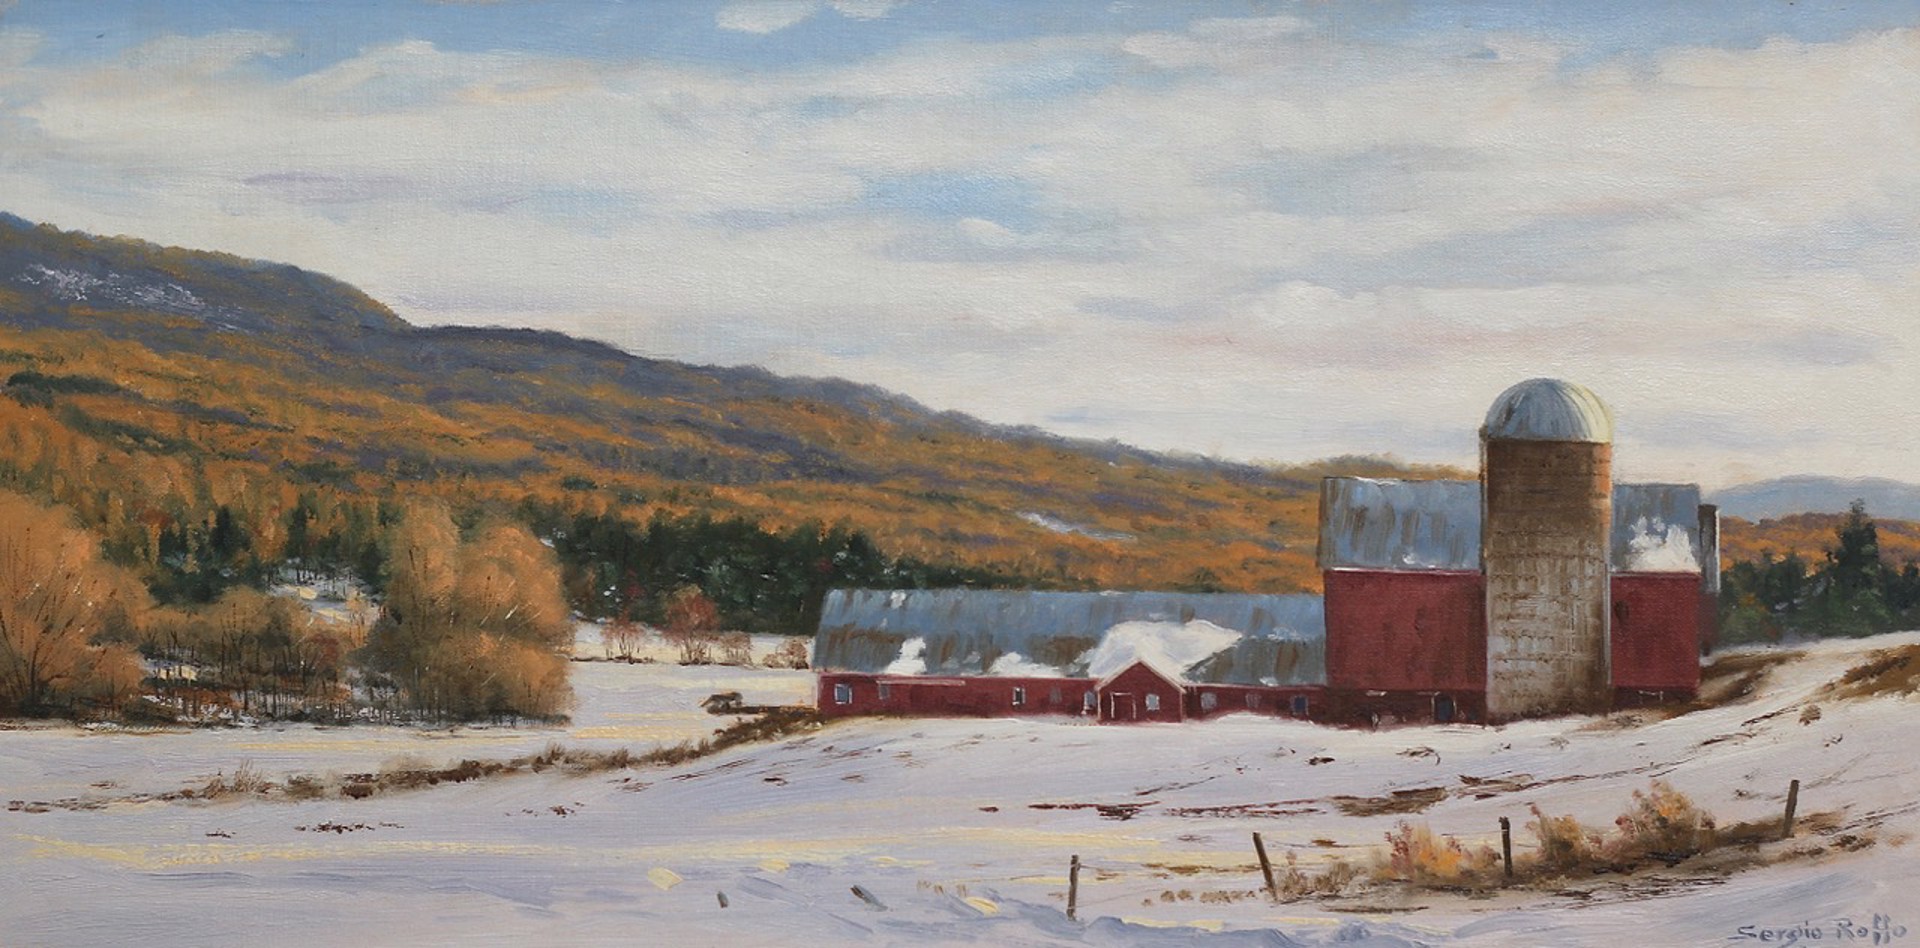 Vermont Farm, Winter by Sergio Roffo